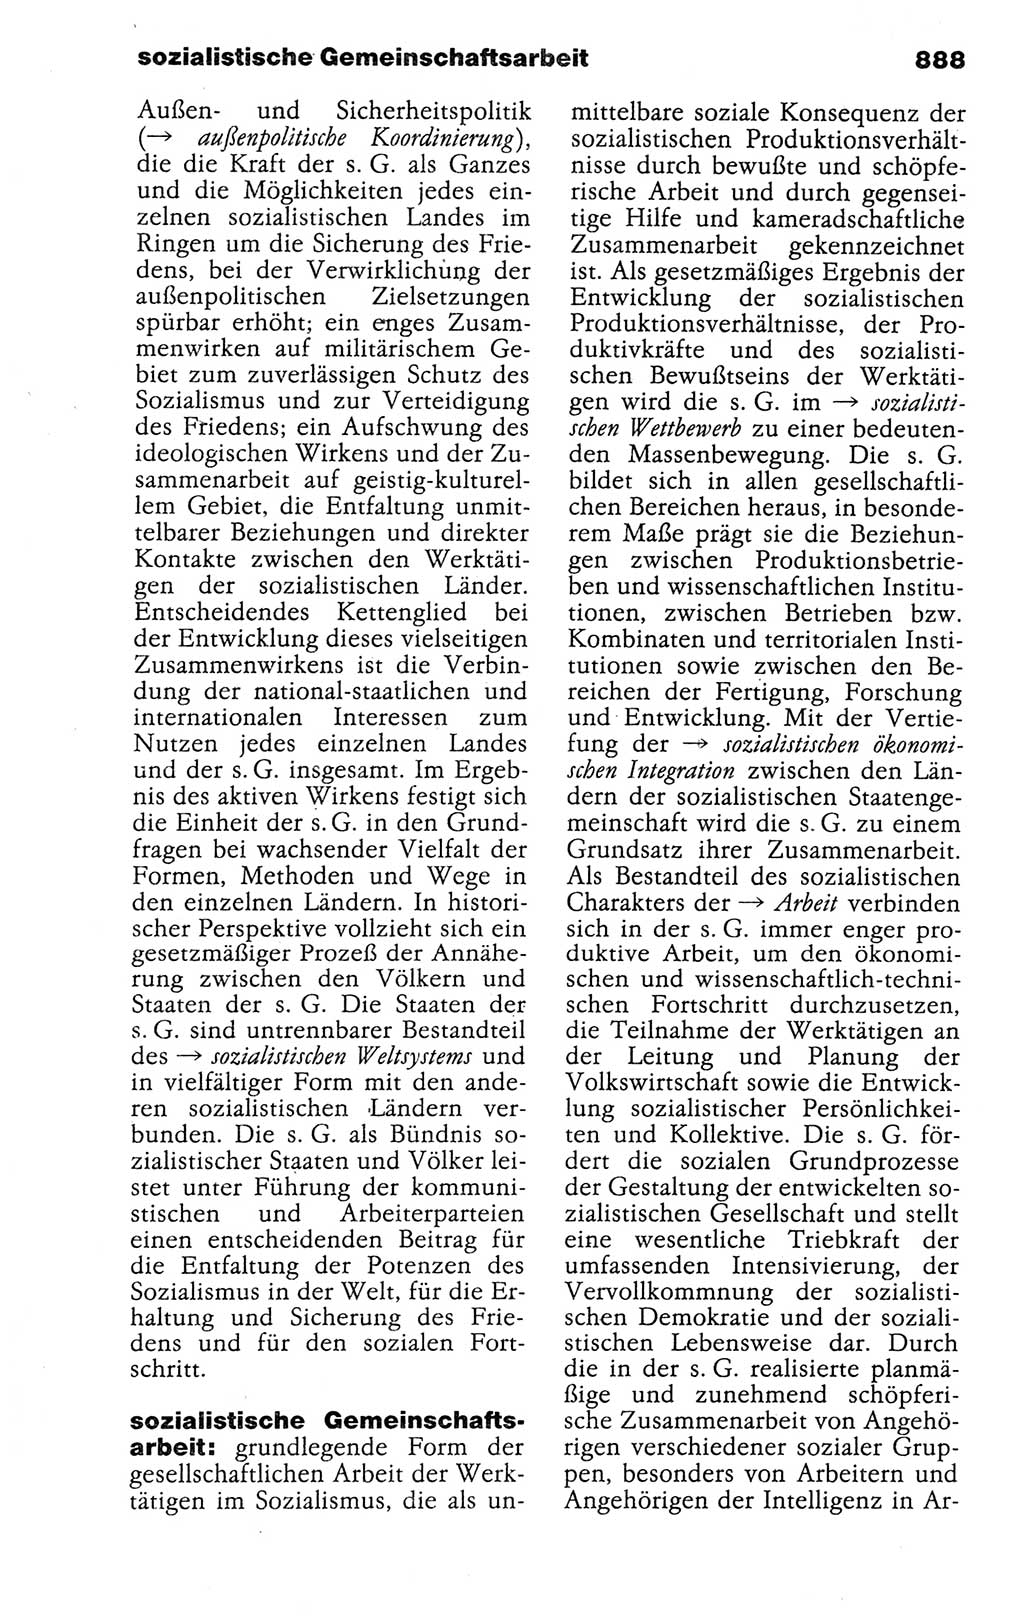 Kleines politisches Wörterbuch [Deutsche Demokratische Republik (DDR)] 1988, Seite 888 (Kl. pol. Wb. DDR 1988, S. 888)